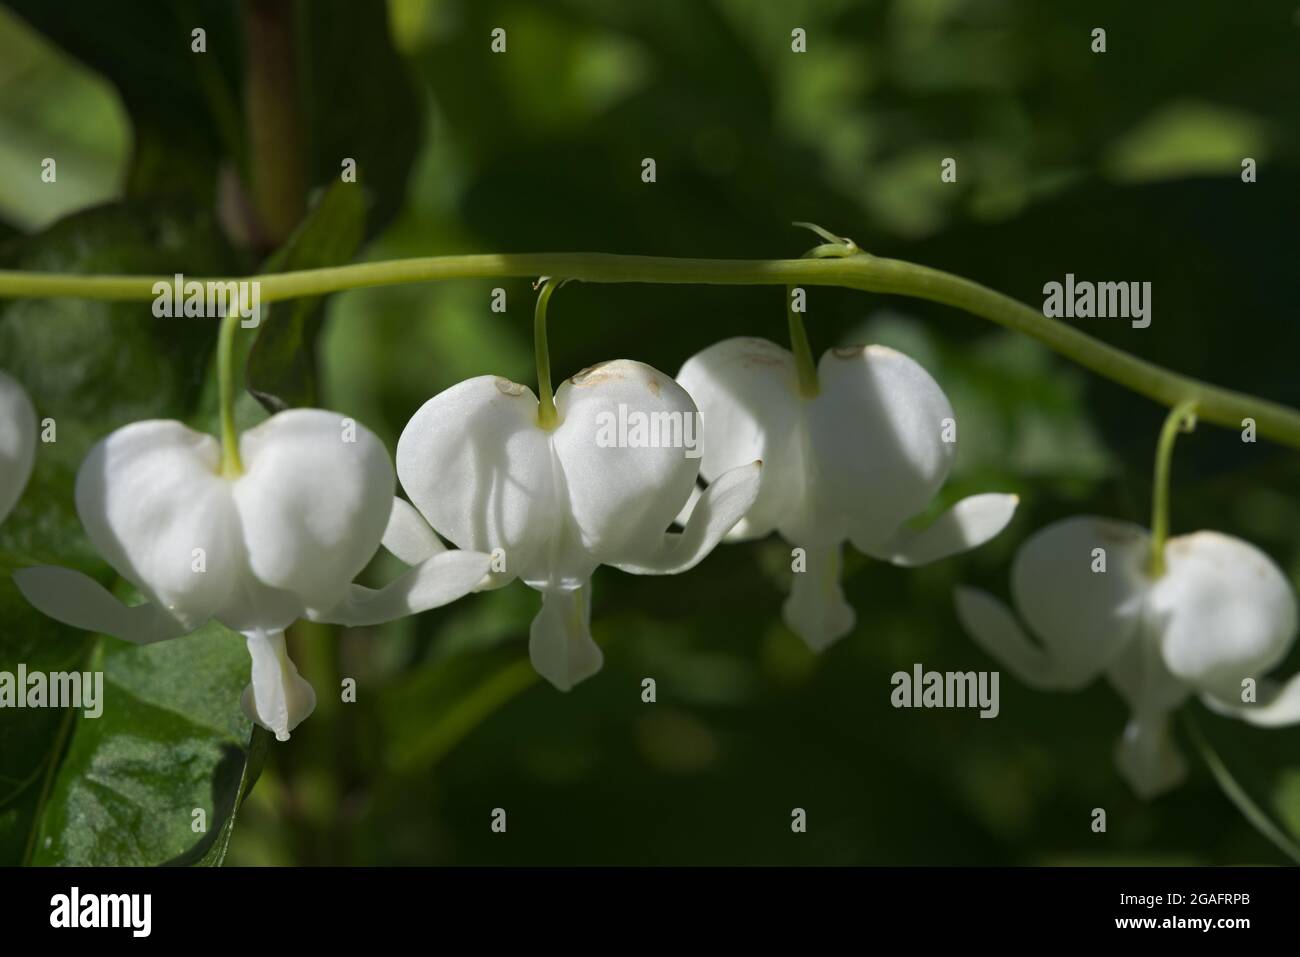 Ligne horizontale de fleurs blanches en forme de coeur. Accroché à la tige de plante, mieux connu sous le nom de saignement-coeur asiatique. Thème romantique ou amour à l'image Banque D'Images